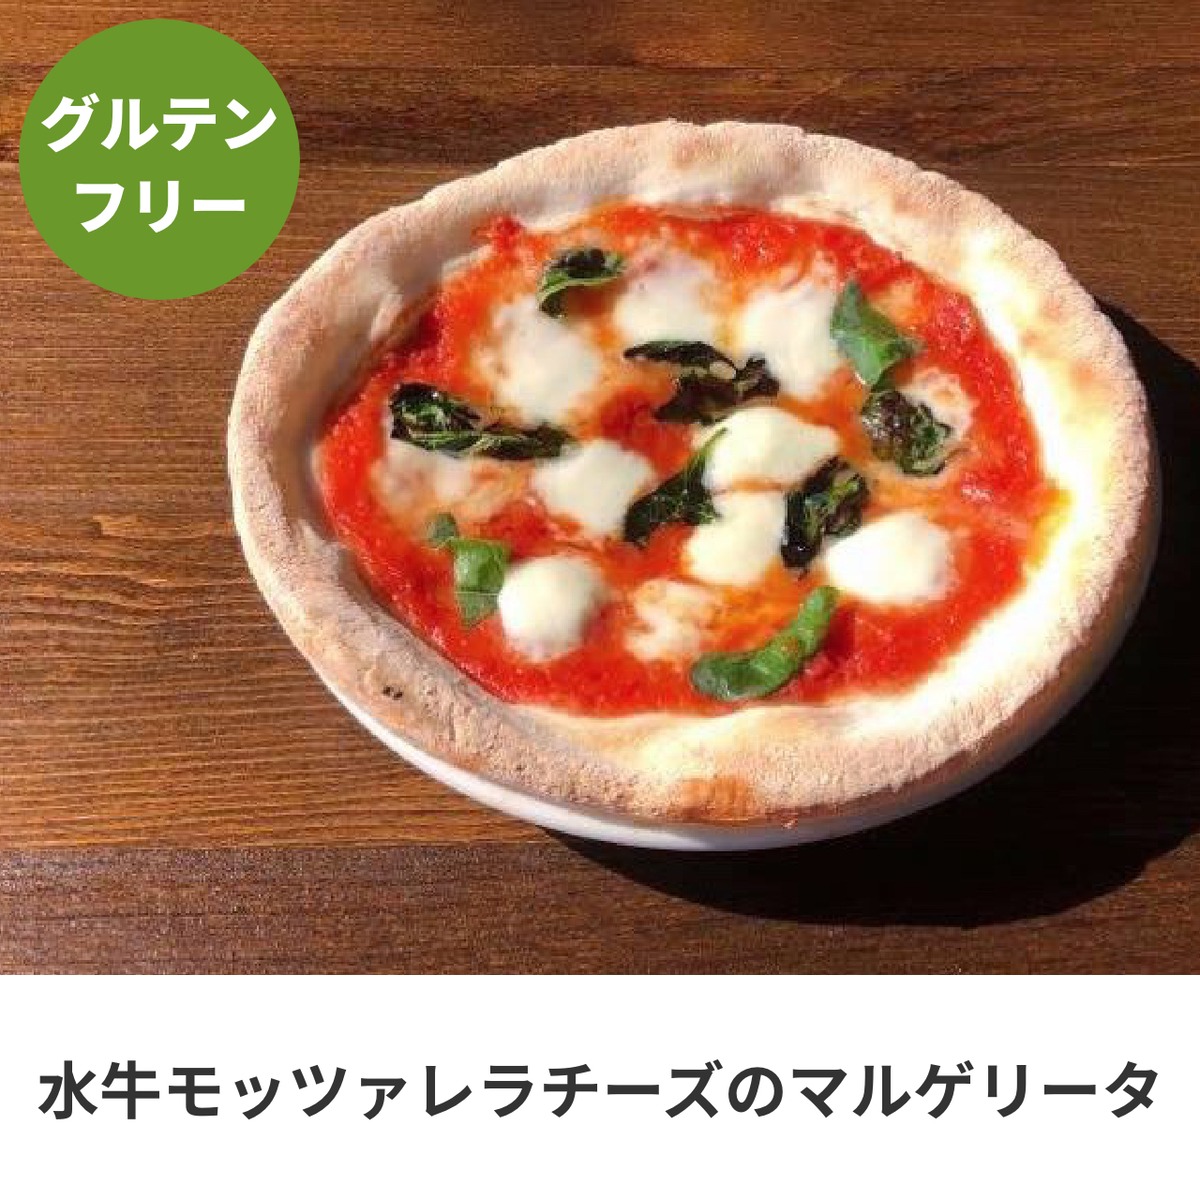 グルテンフリーピザ 水牛モッツァレラチーズのマルゲリータ Icaro Pizza Lab 本場ナポリのグルテンフリーピッツァと本格薪窯ピッツァ